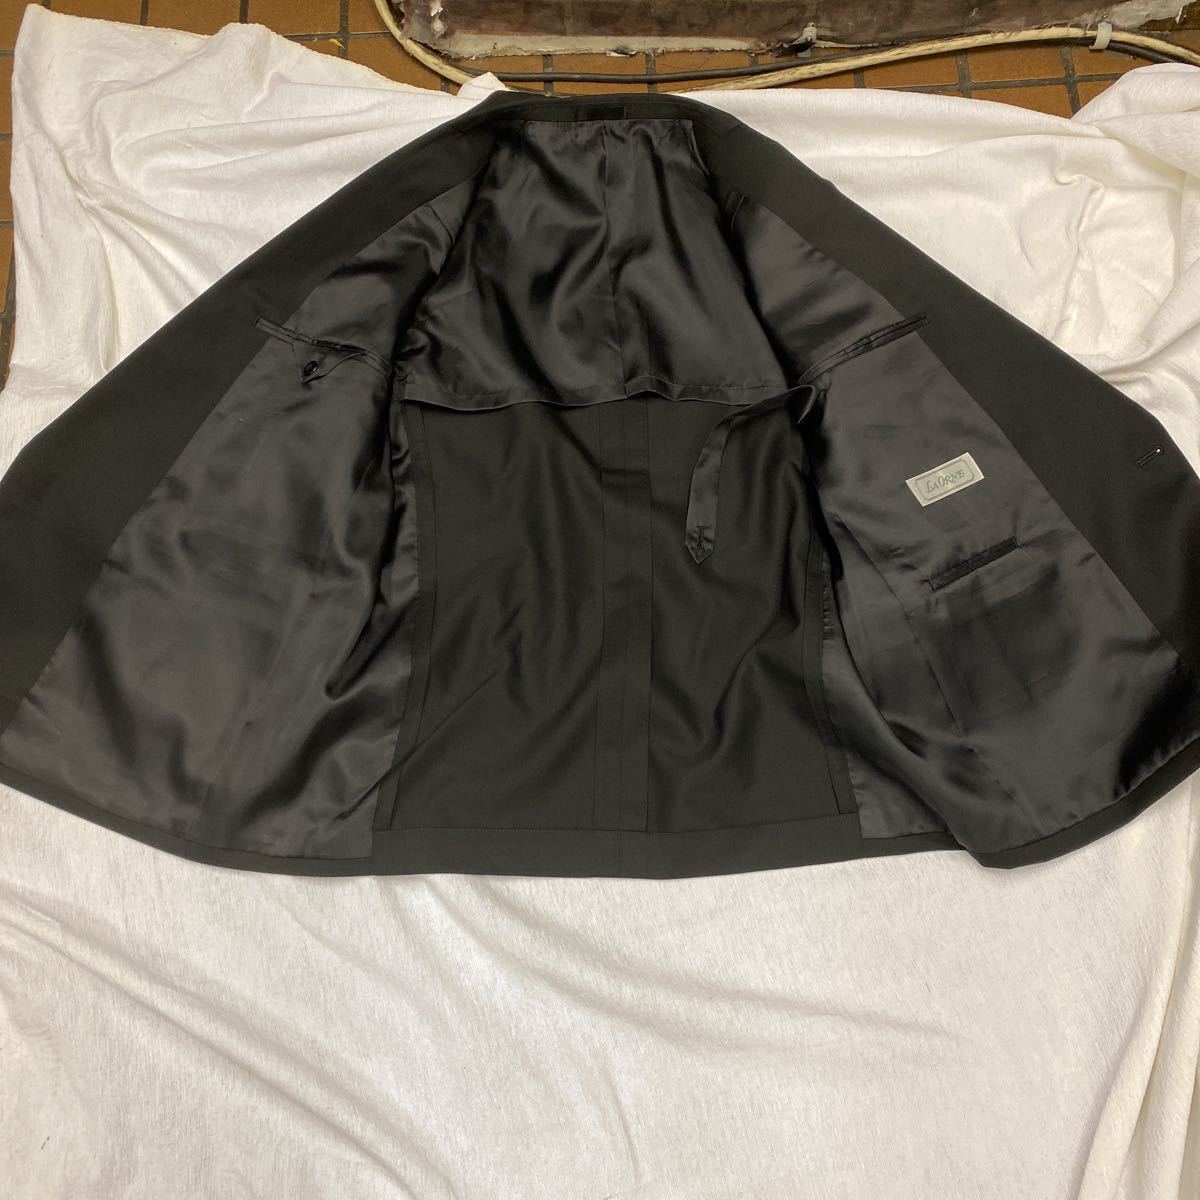  новый товар не использовался супер-скидка 4.1.. двубортный костюм размер AB3 one tuck формальный подшивочная лента сервис!!.